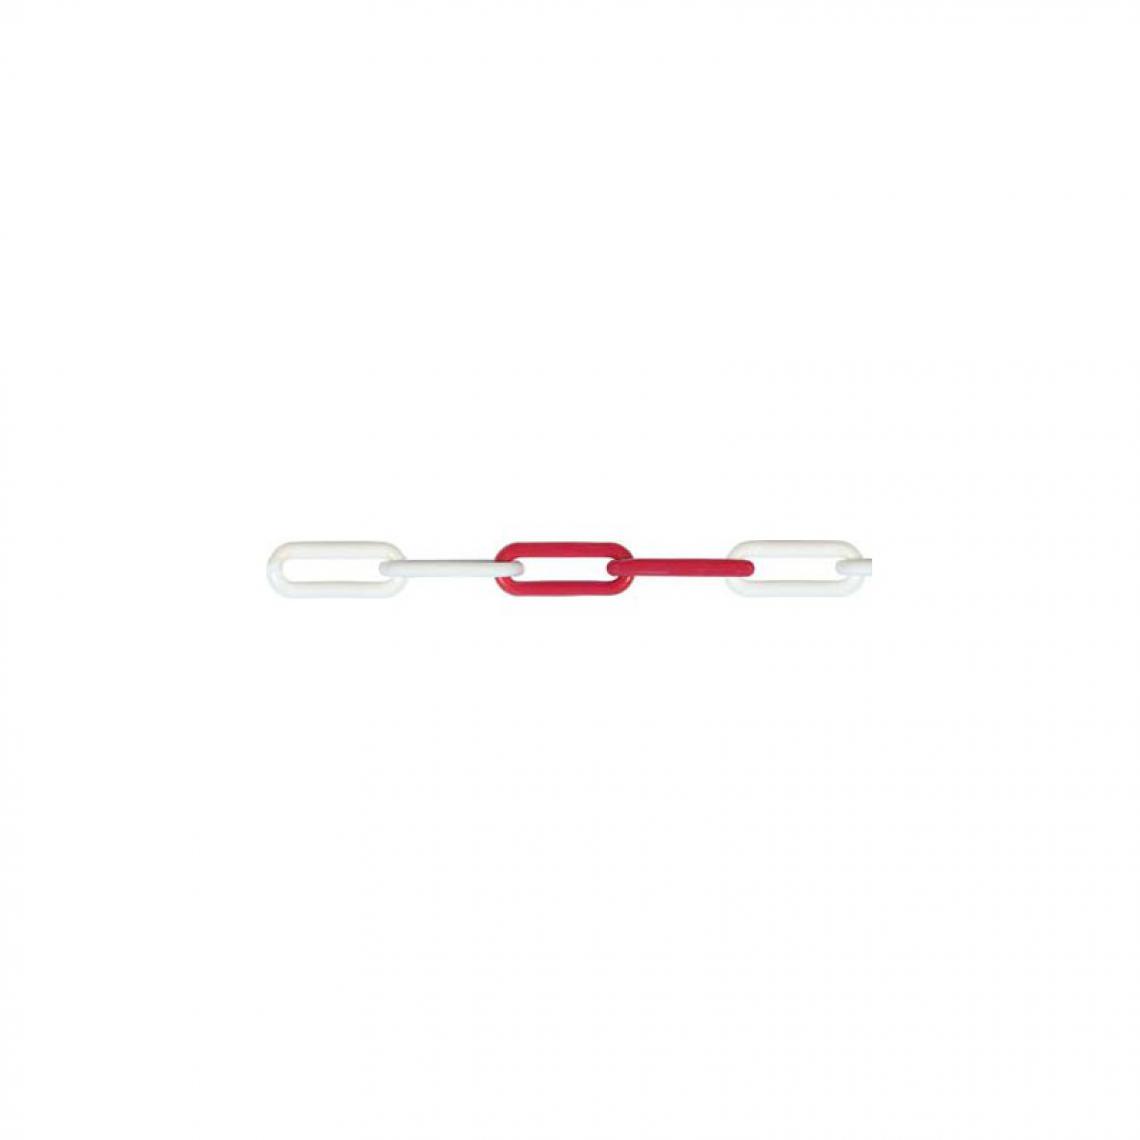 marque generique - Chaine plastique 8mm x 25m rouge/blanc - Corde et sangle